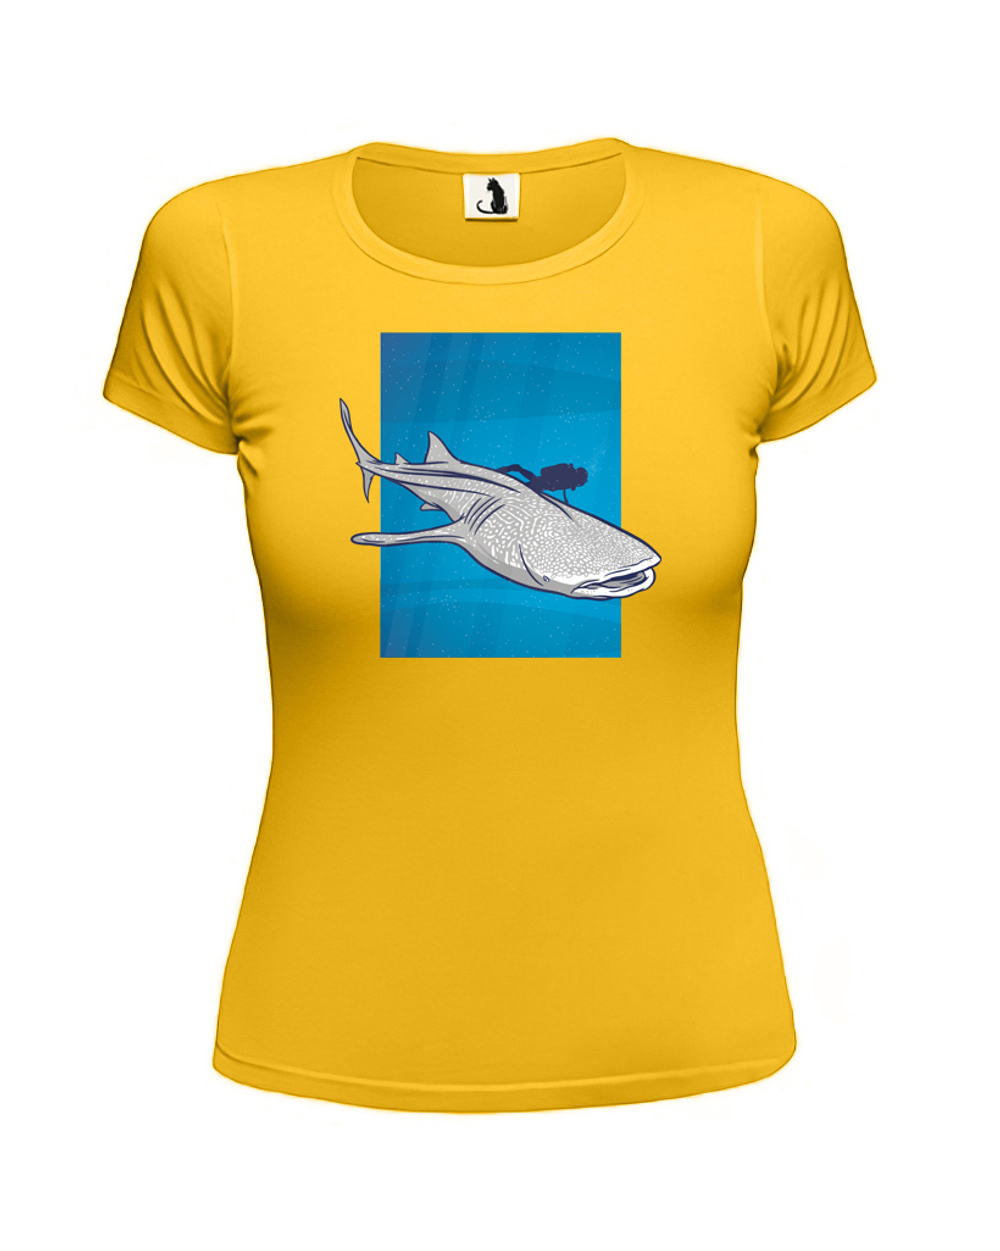 Футболка Китовая акула женская желтая